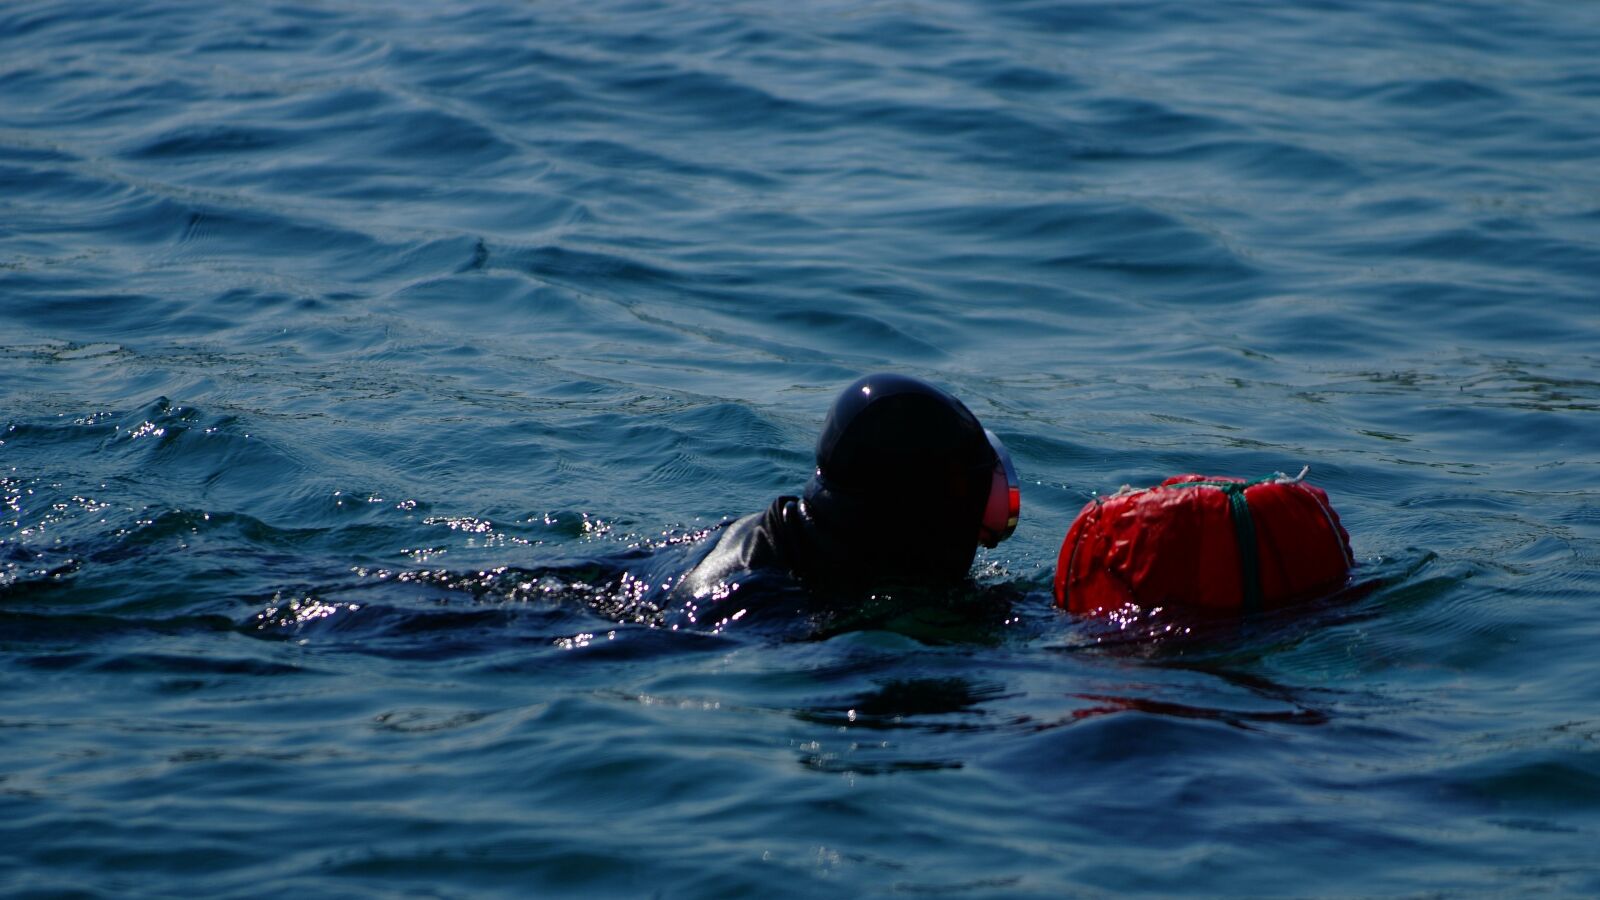 Fujifilm FinePix S3 Pro sample photo. Sun maid, swimming, sea photography